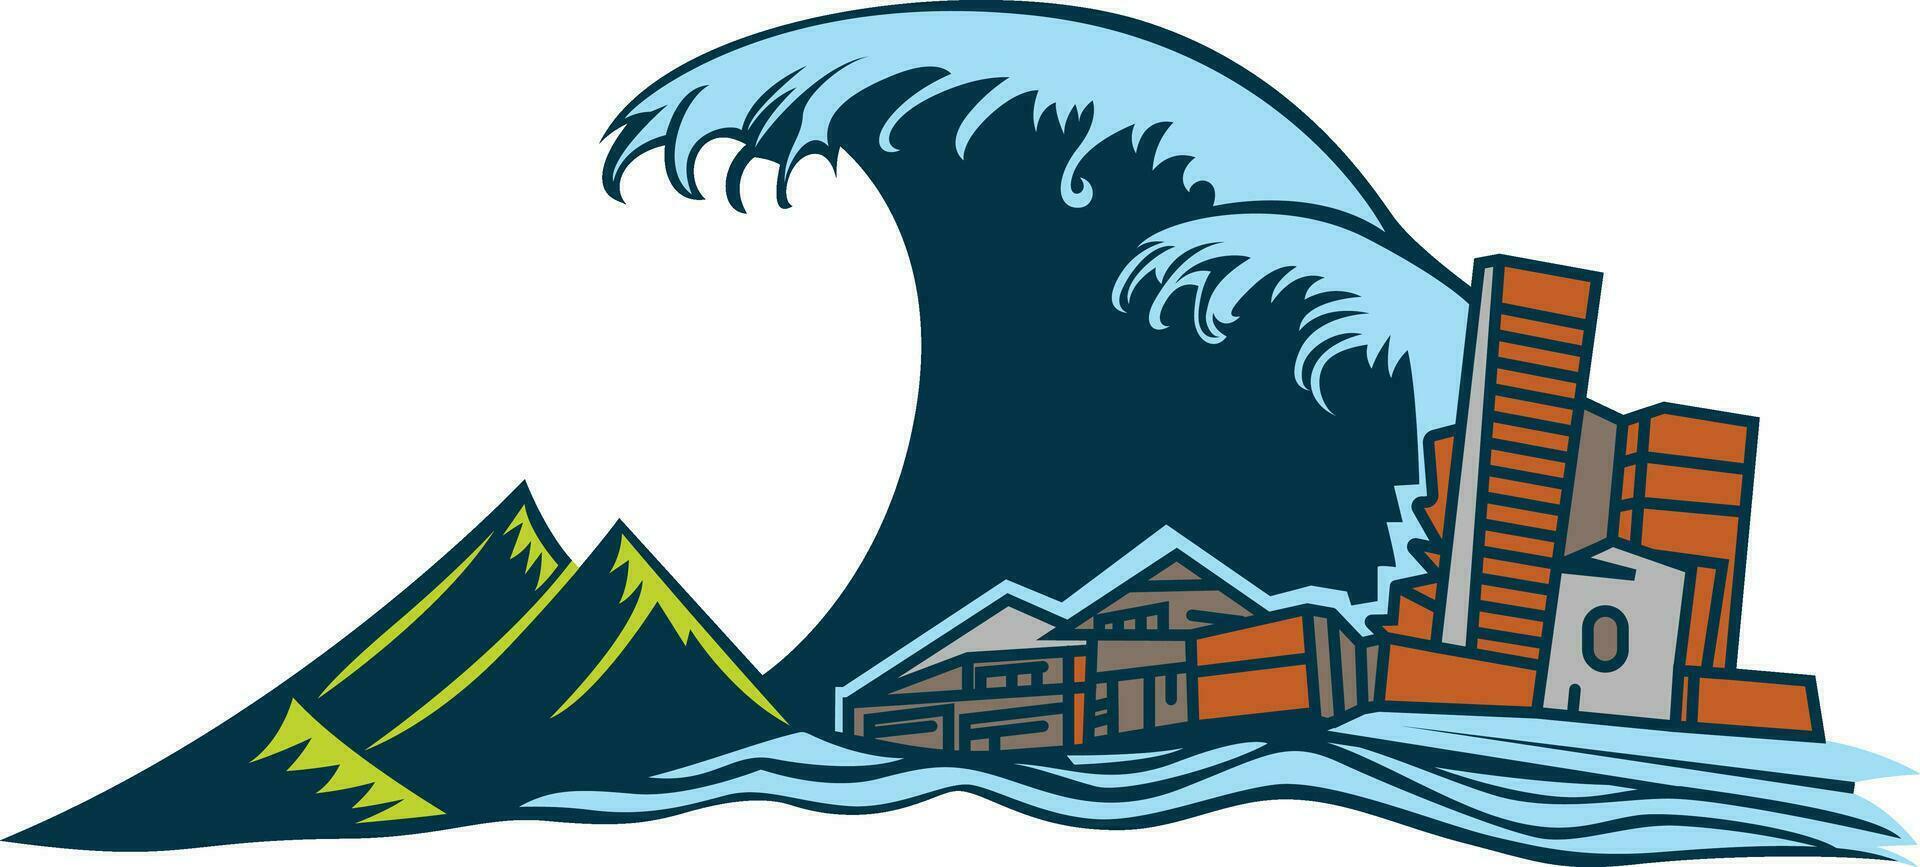 tsunami composición representando un natural desastre vector ilustración, tsunami golpear el suelo y destruyendo urbano ciudad valores vector imagen